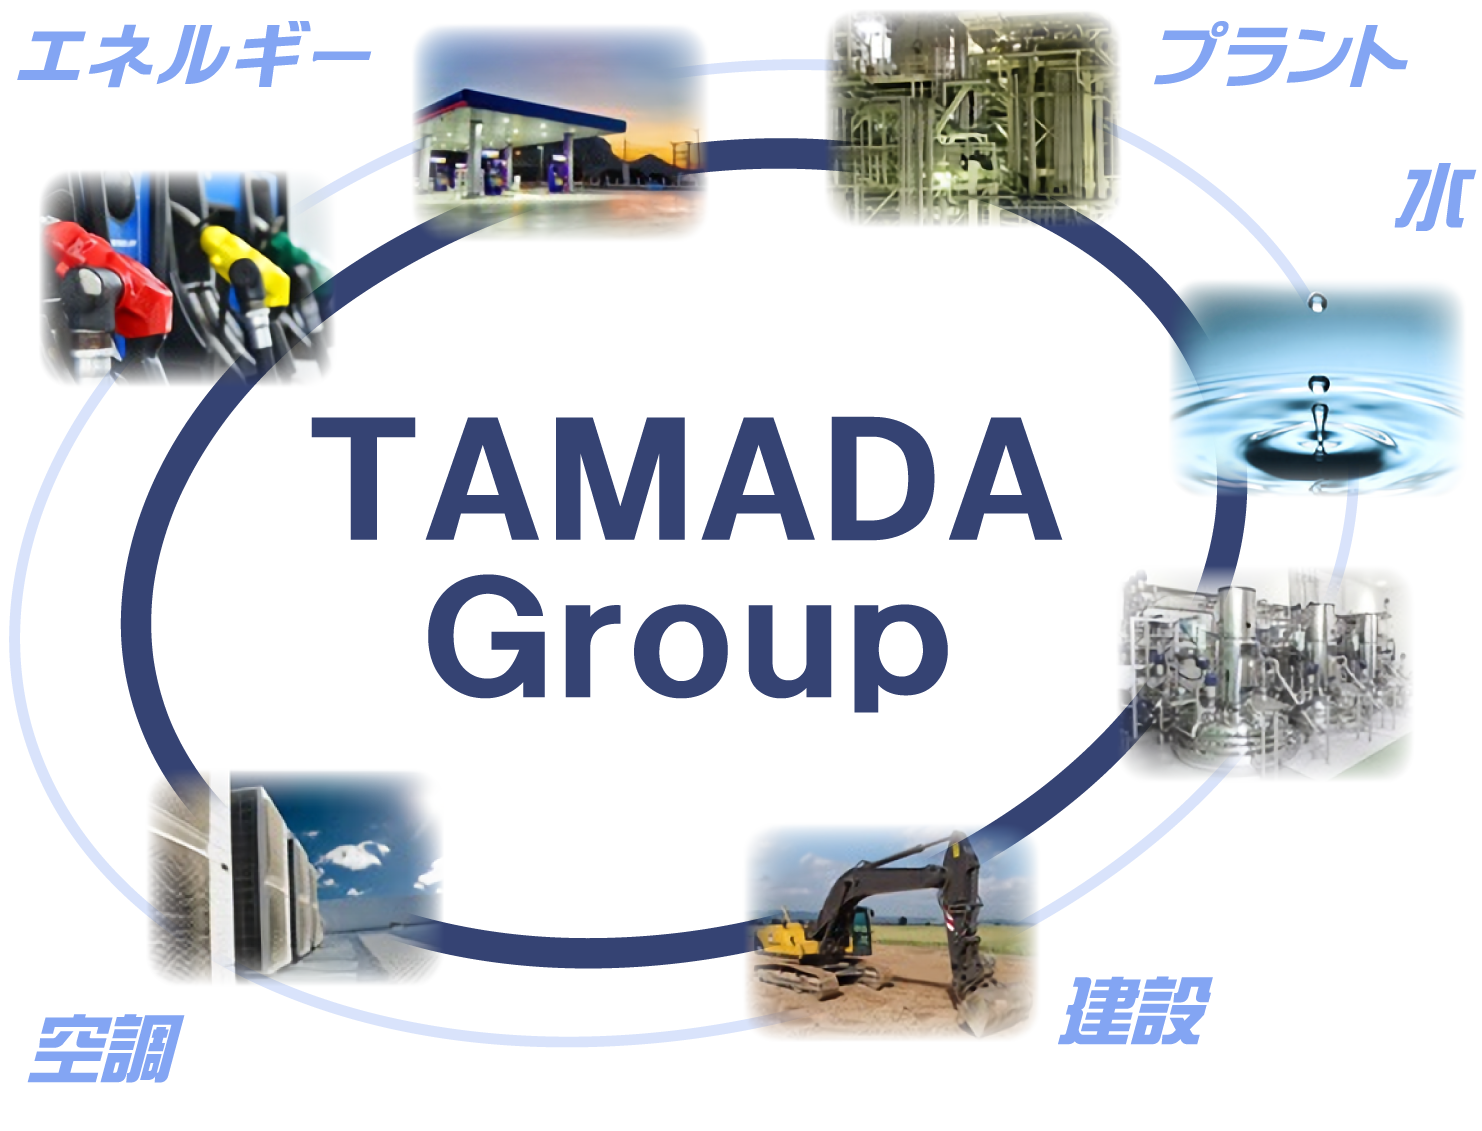 TAMADA Group